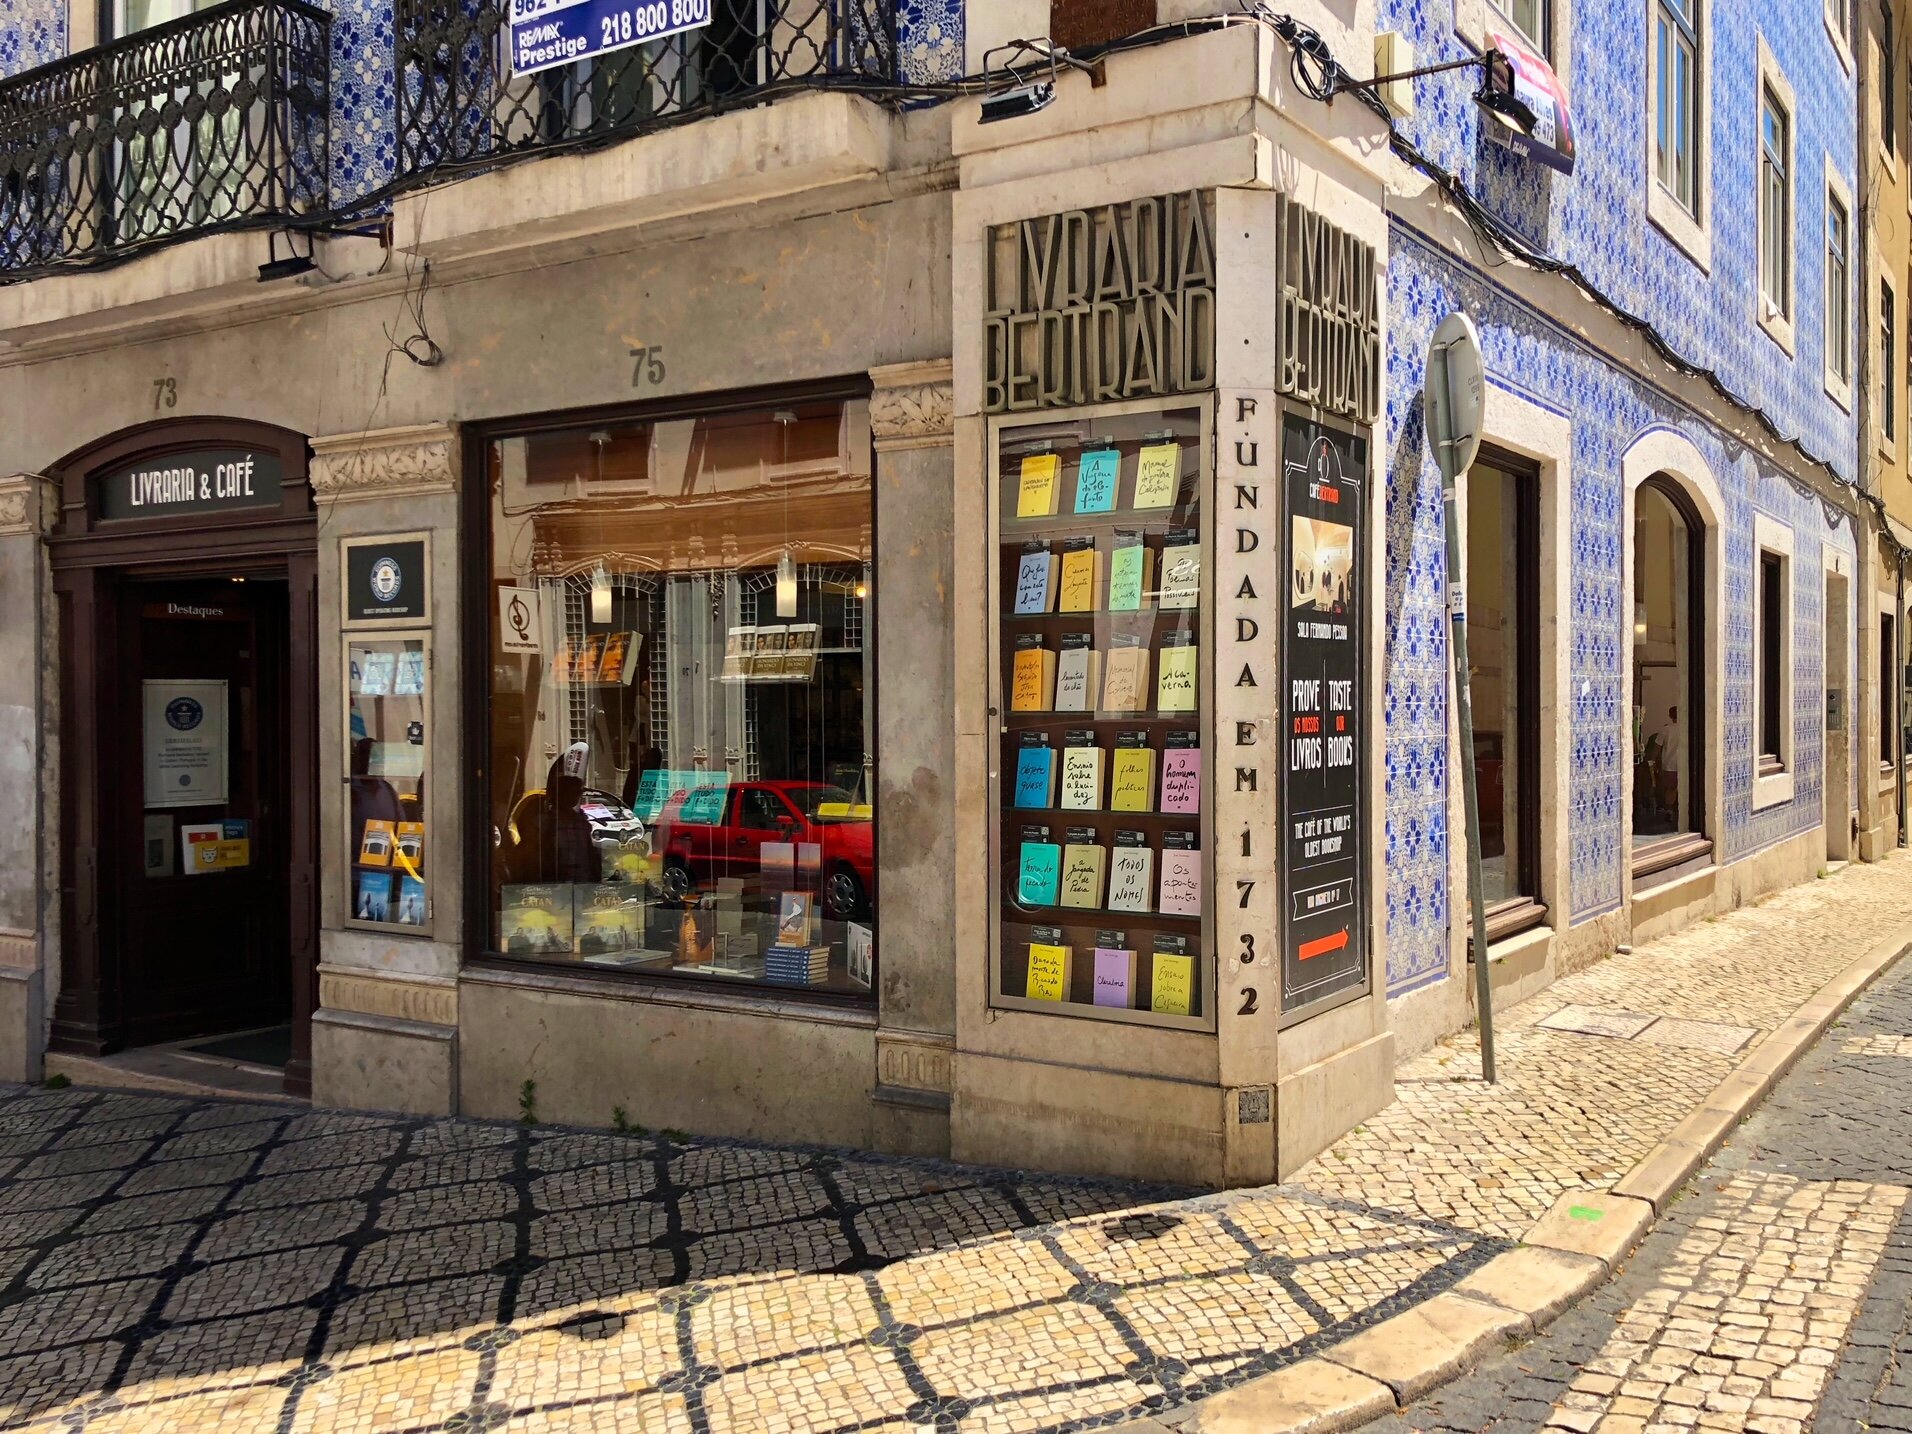 Livros em Português - Mapas de Portugal - Bertrand Livreiros - livraria  Online